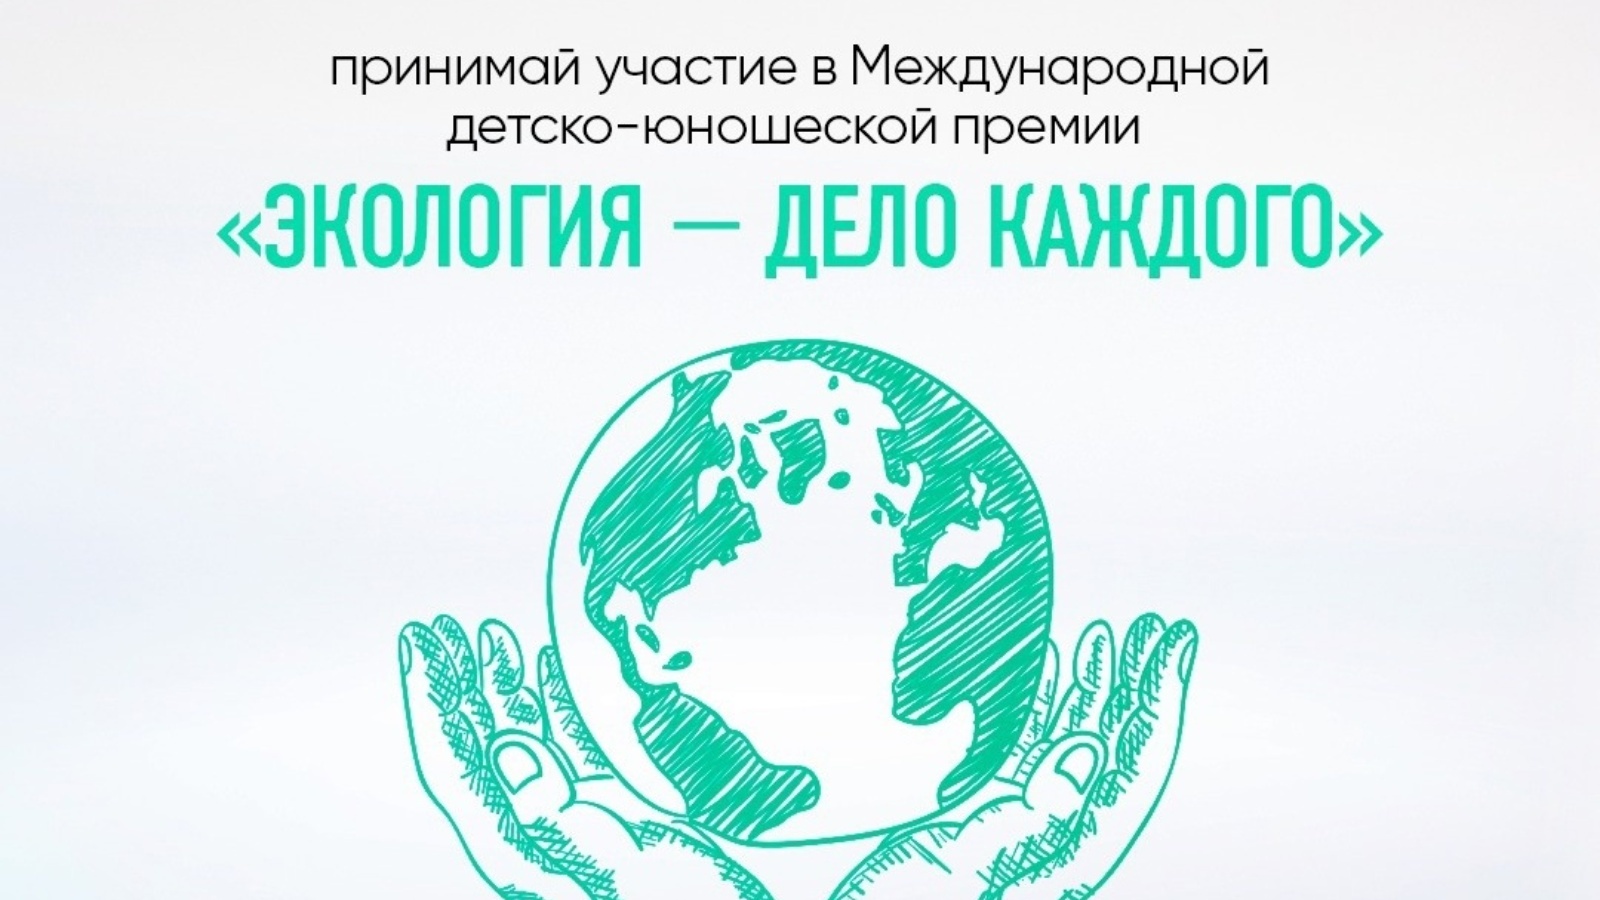 День экологии в россии в 2024